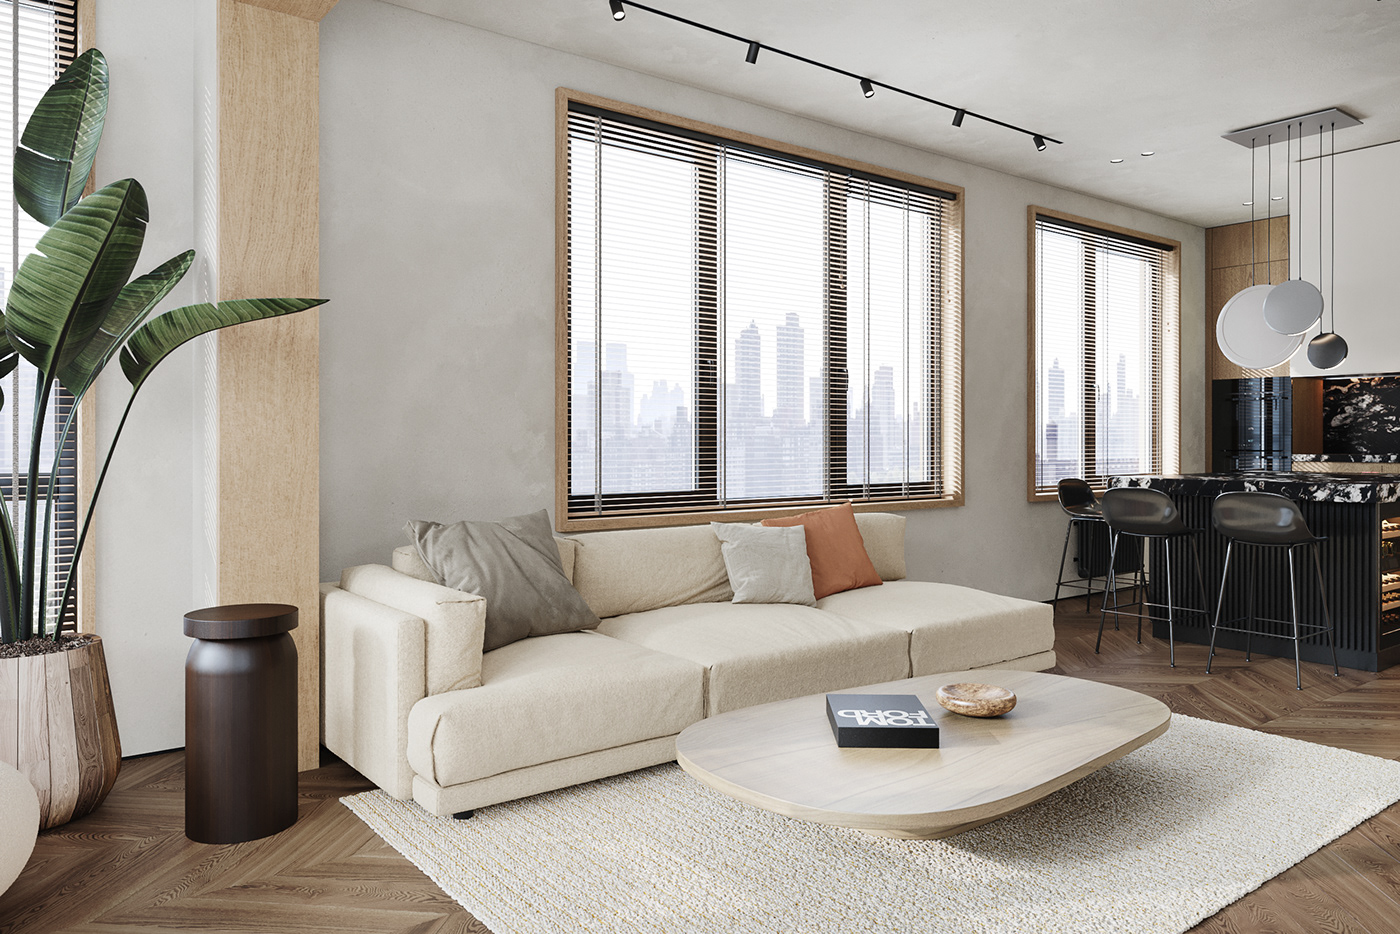 apartement corona design design interior Interior minimal photo Render